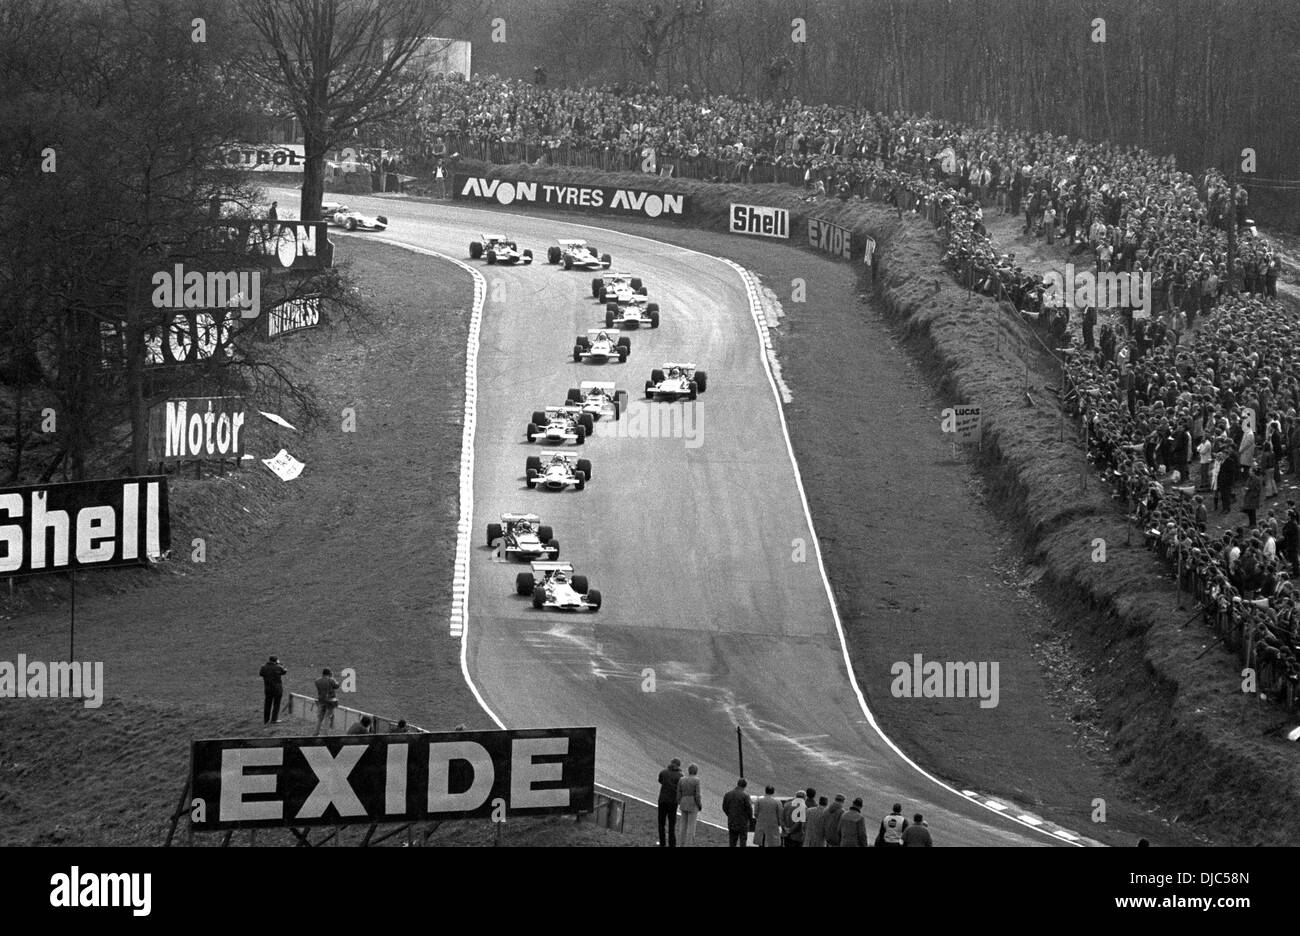 En bas de la colline du druide en bas Bend, la Course des Champions, Brands Hatch, Angleterre, 22 mars 1970. Banque D'Images